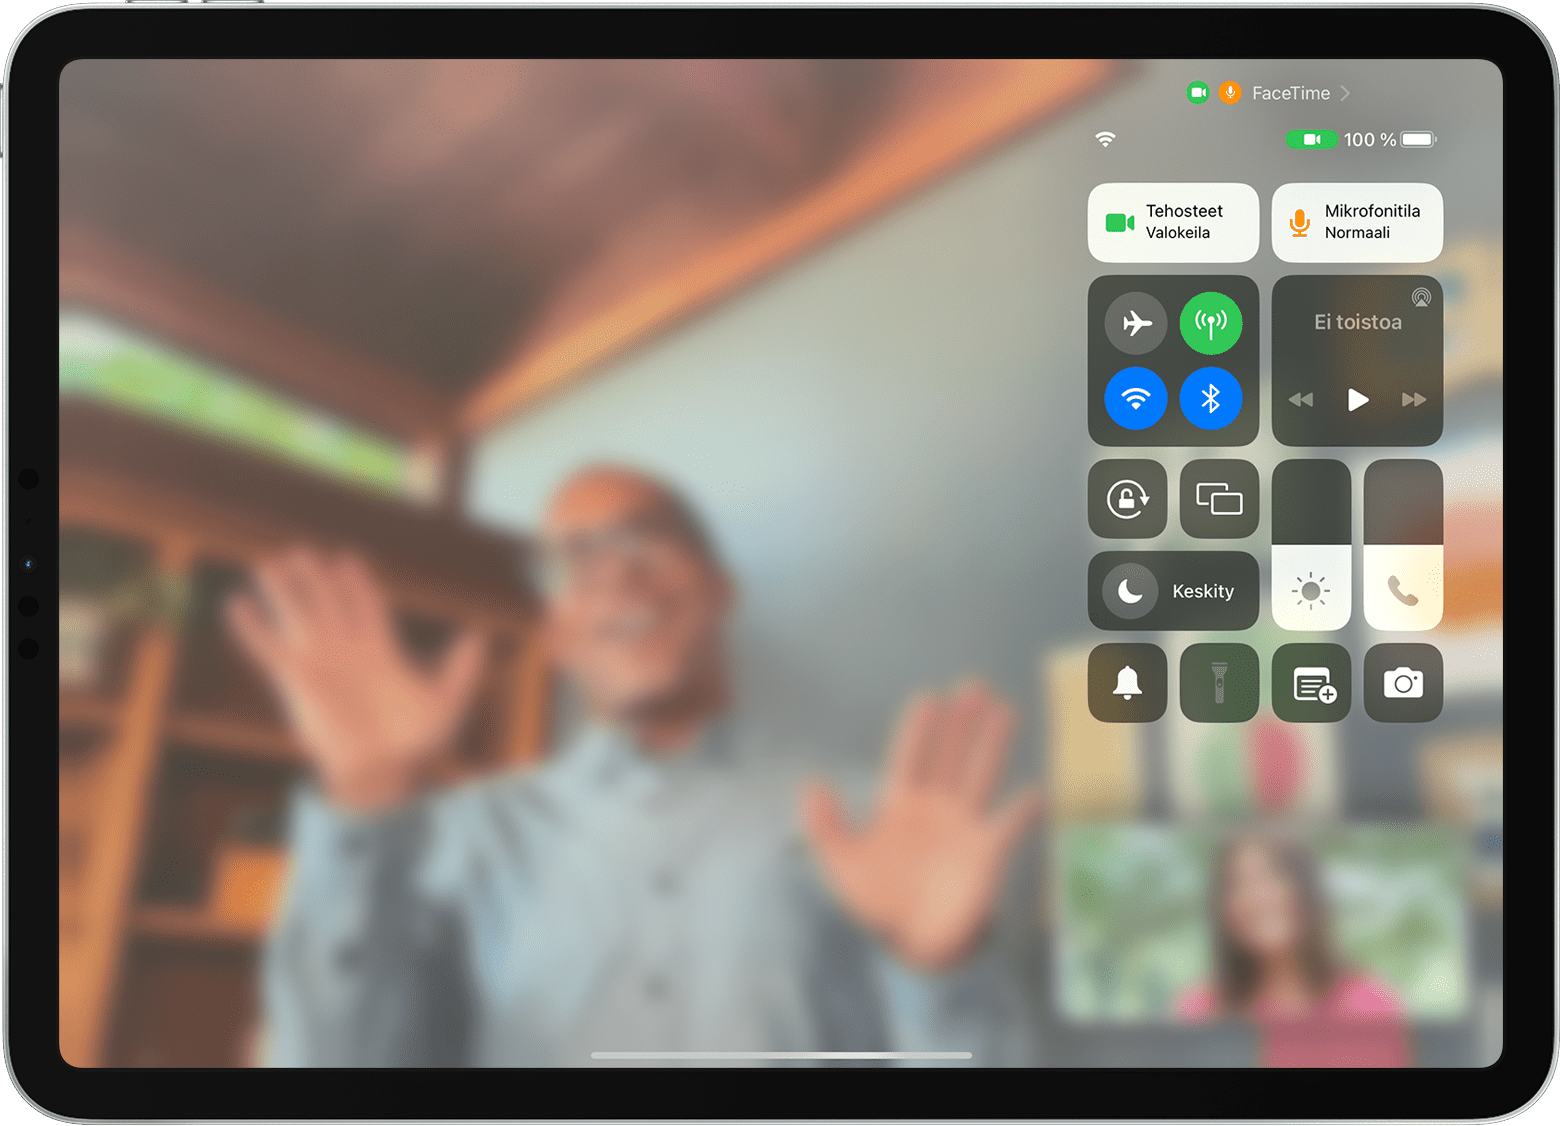 iPadin näytössä näkyy FaceTime-puhelu, Ohjauskeskus ja Videotehosteet-painike